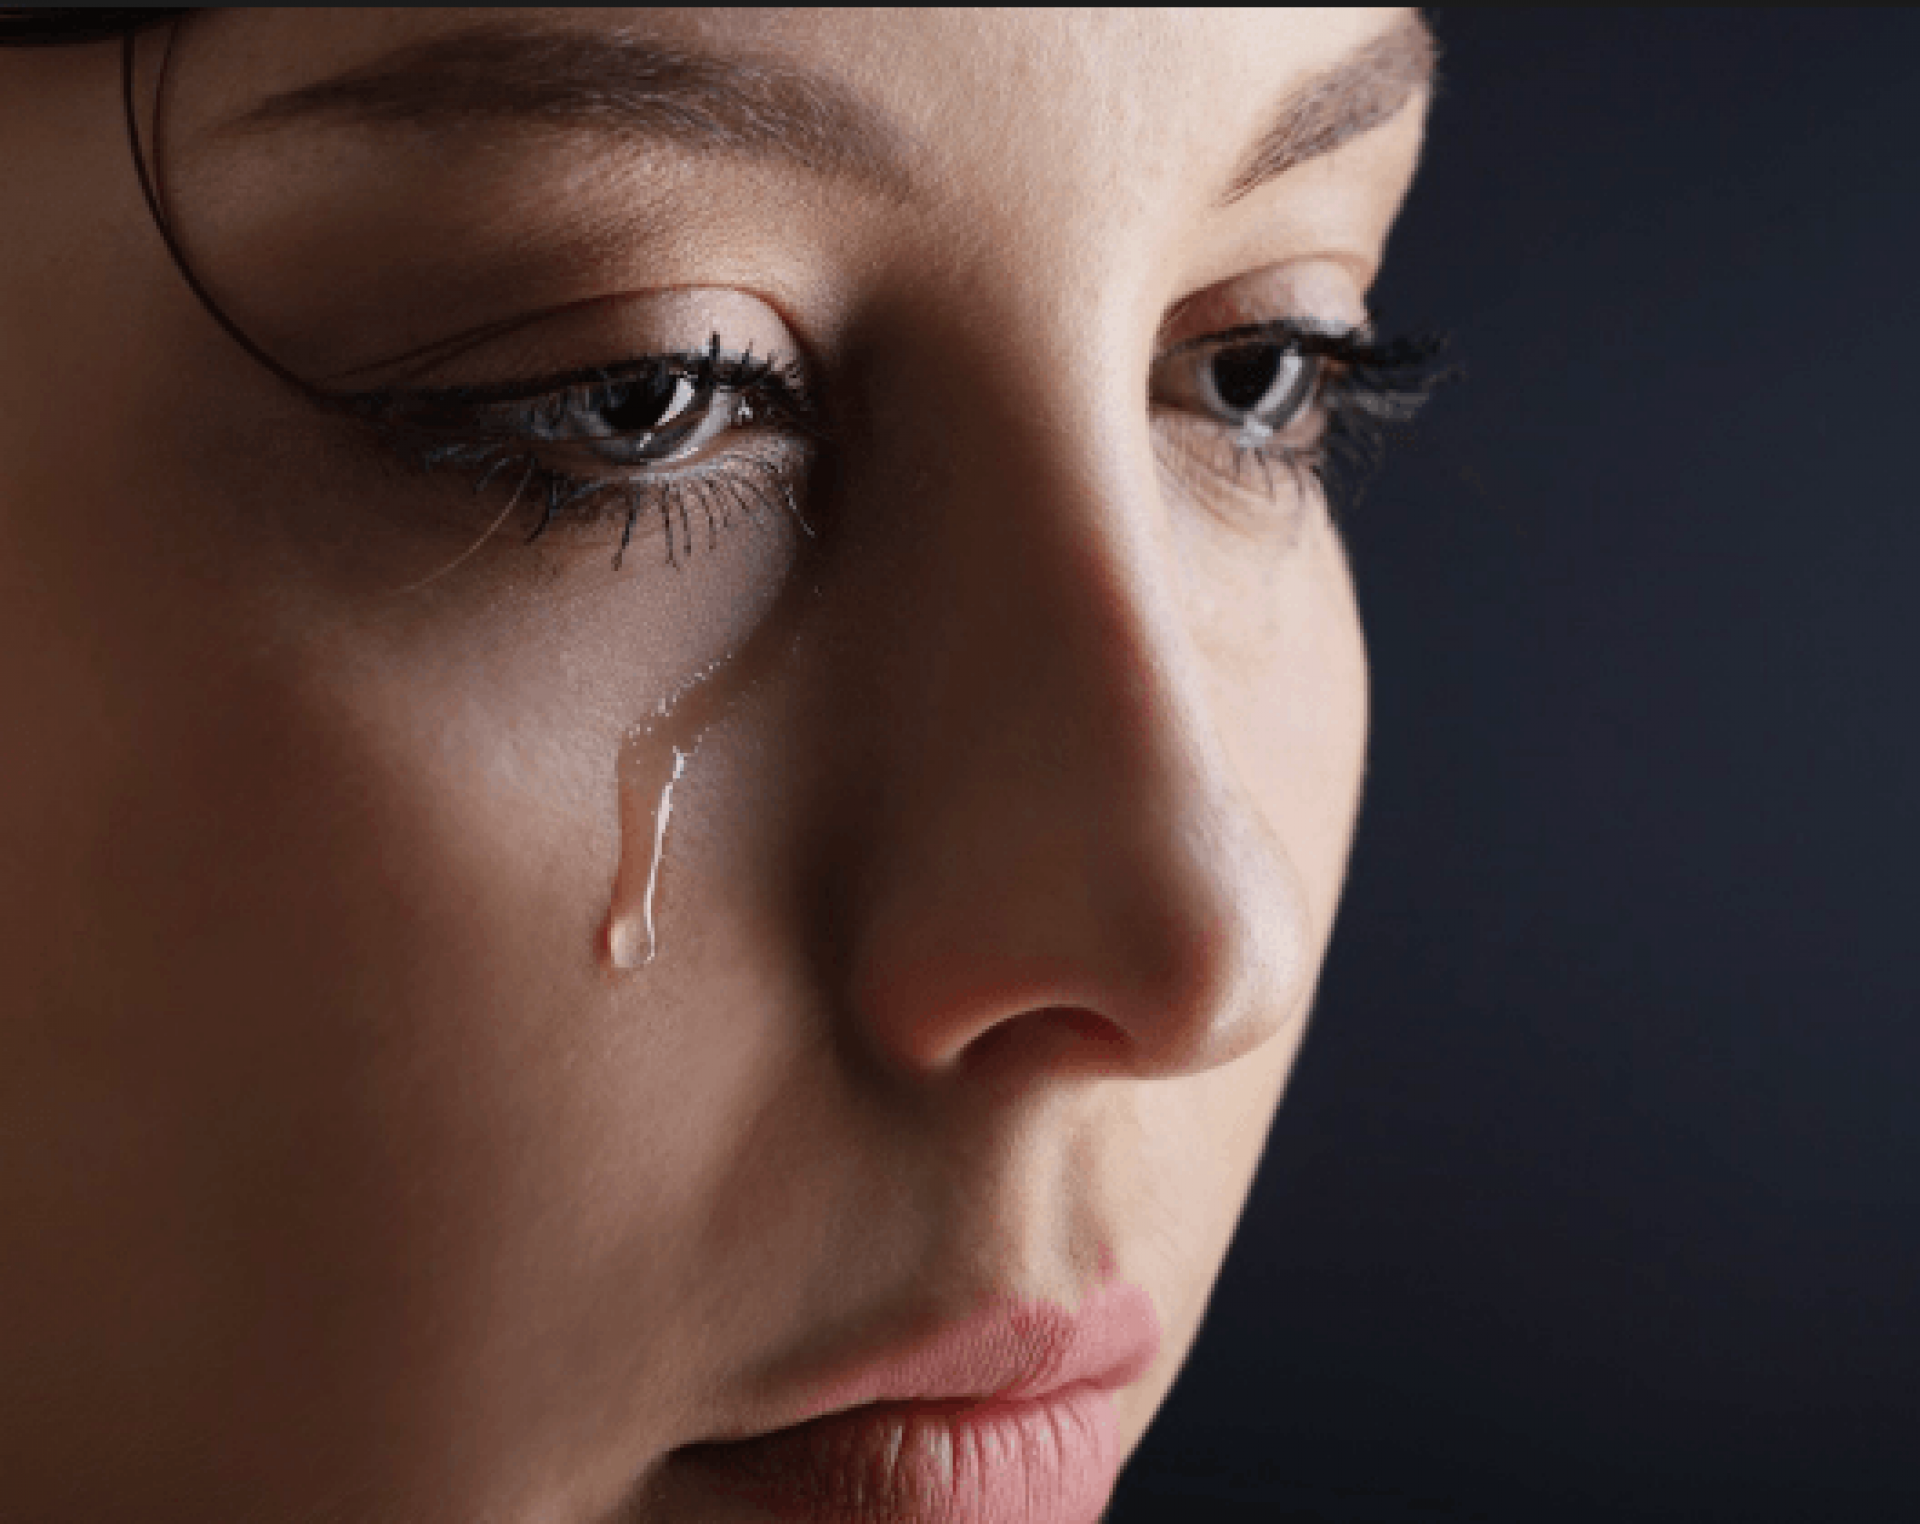 لماذا تبكي النساء أكثر من الرجال؟ اليكم السبب